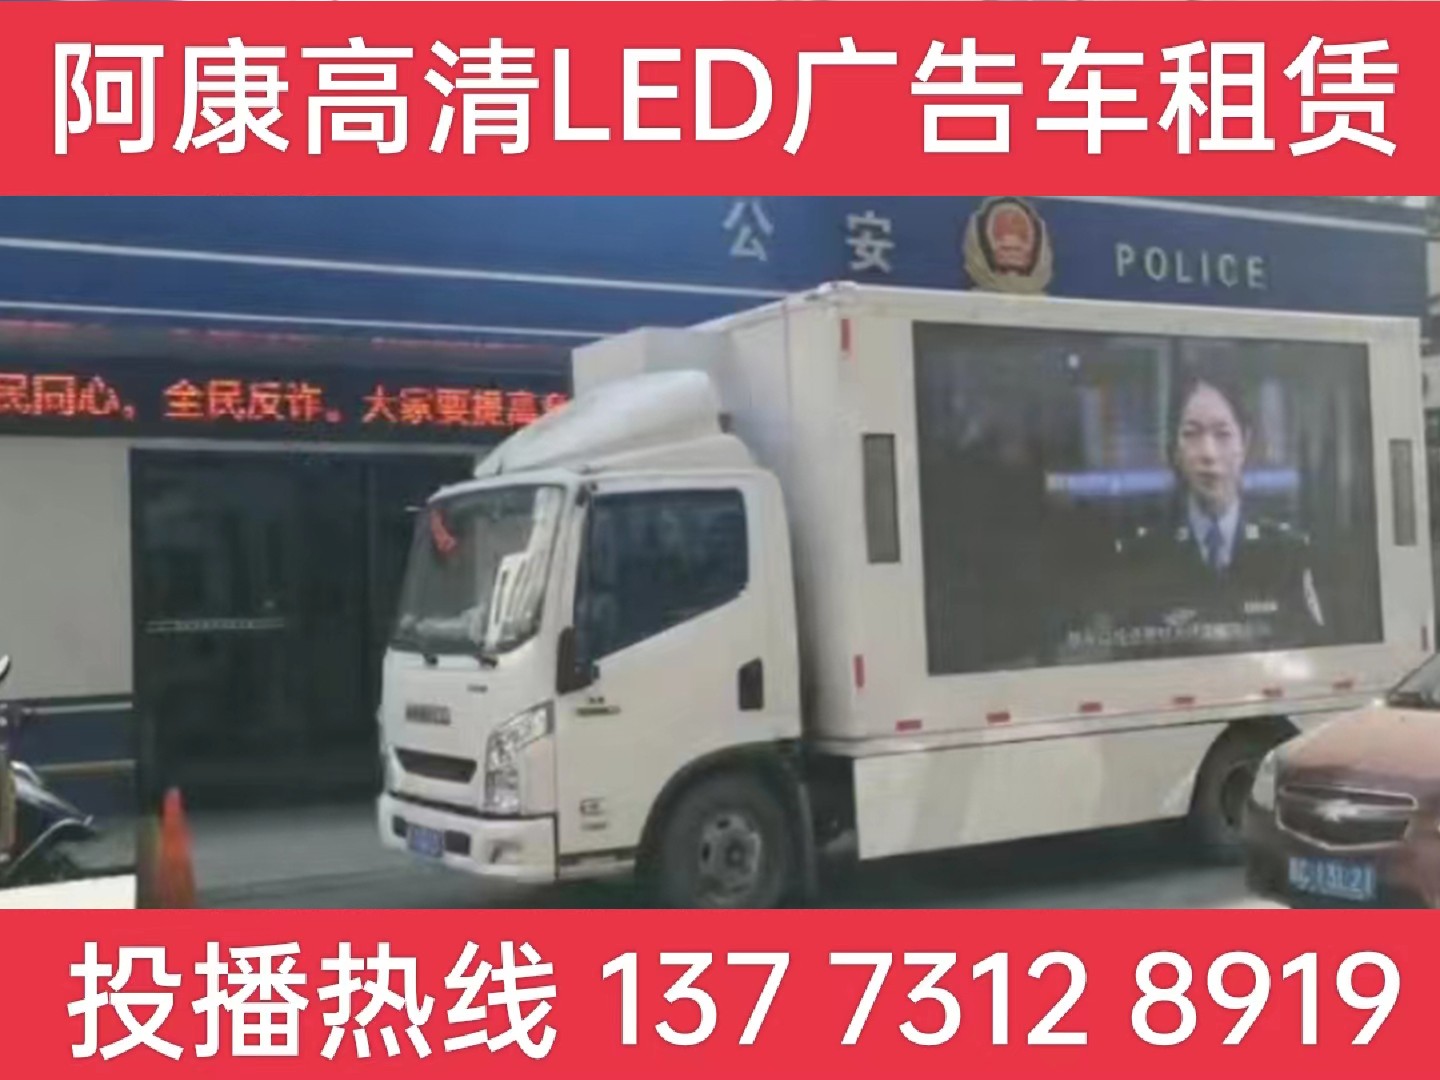 南通市LED广告车租赁-反诈宣传